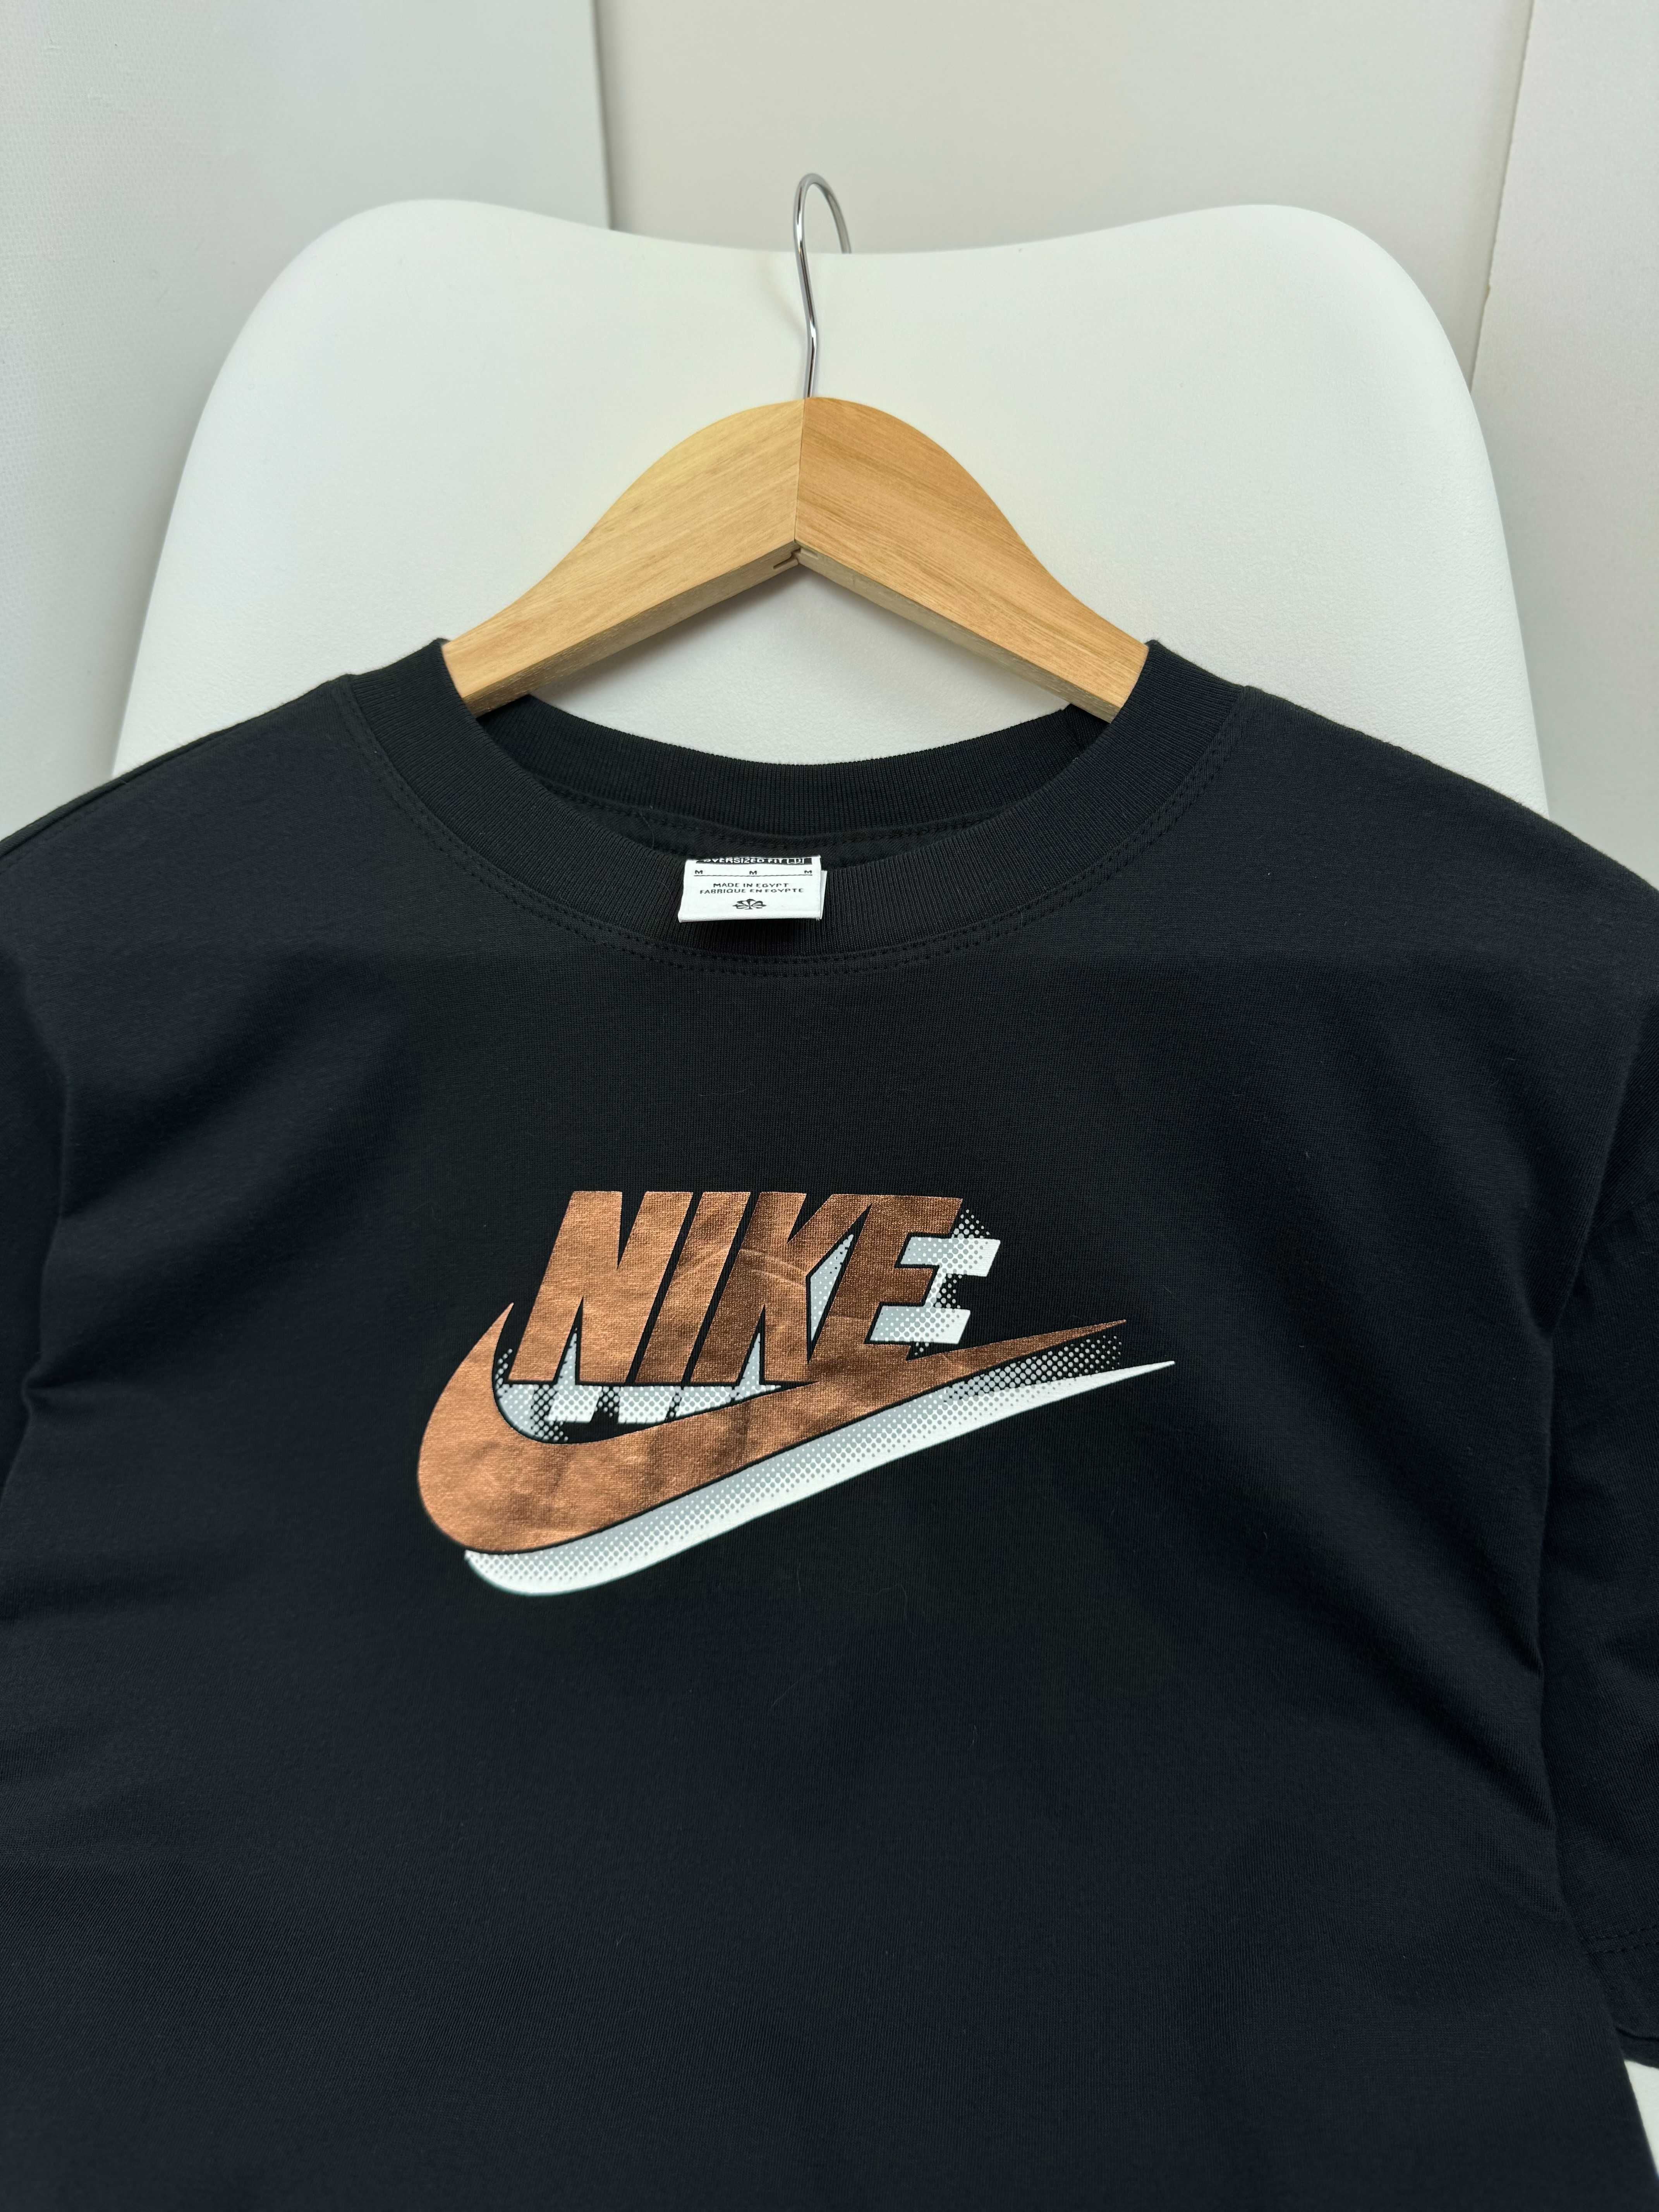 Чоловіча нова футболка Nike поло Розмір М.